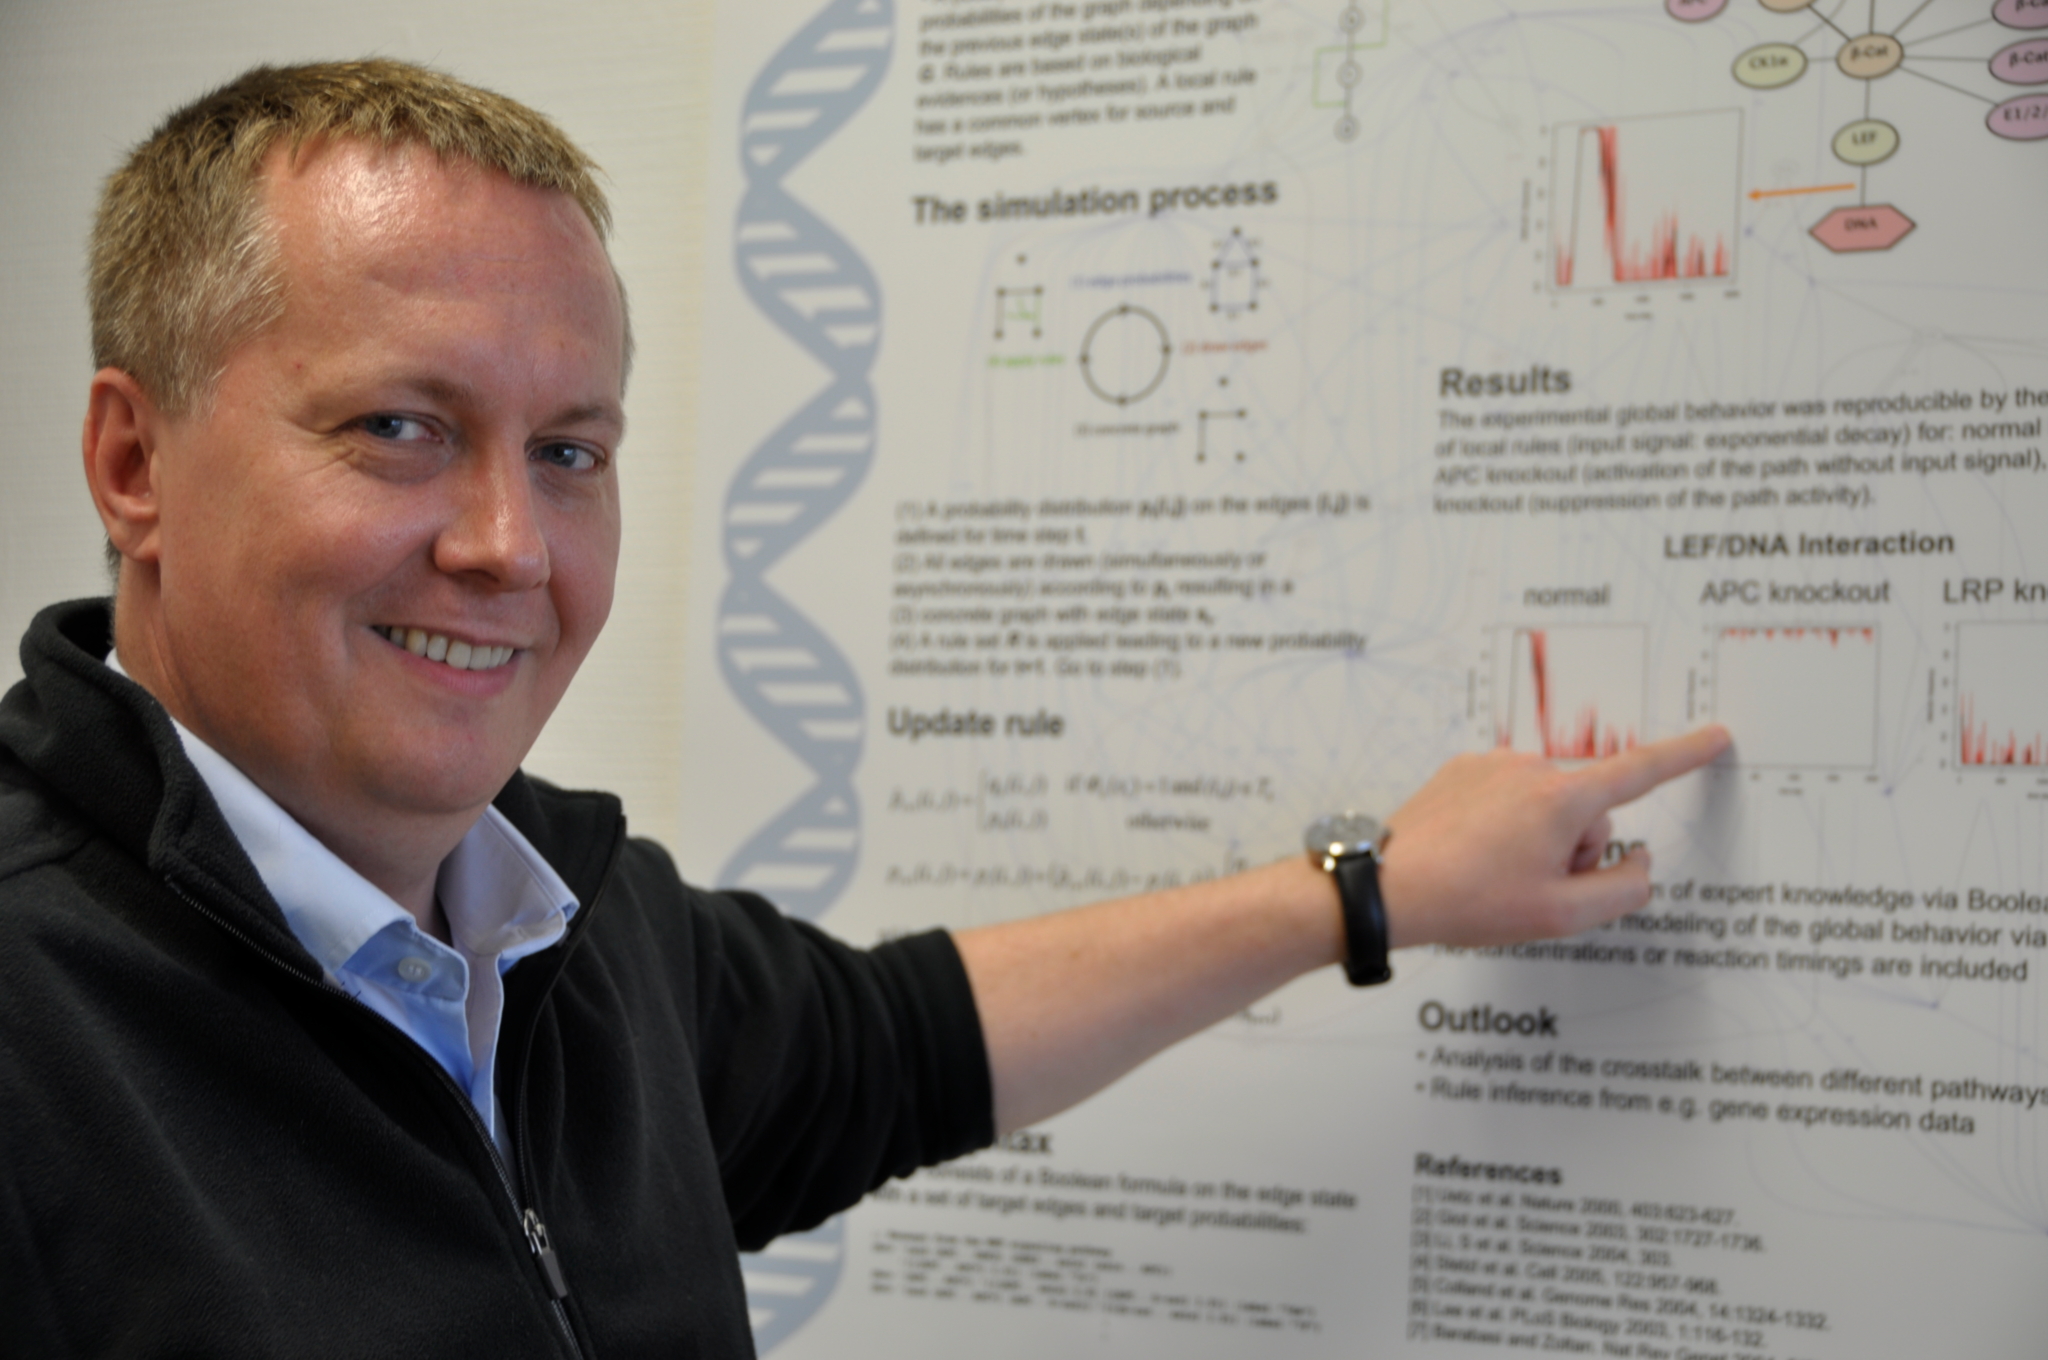 Der Ulmer Bioinformatiker Hans Kestler zeigt mit dem Finger auf ein wissenschaftliches Poster.